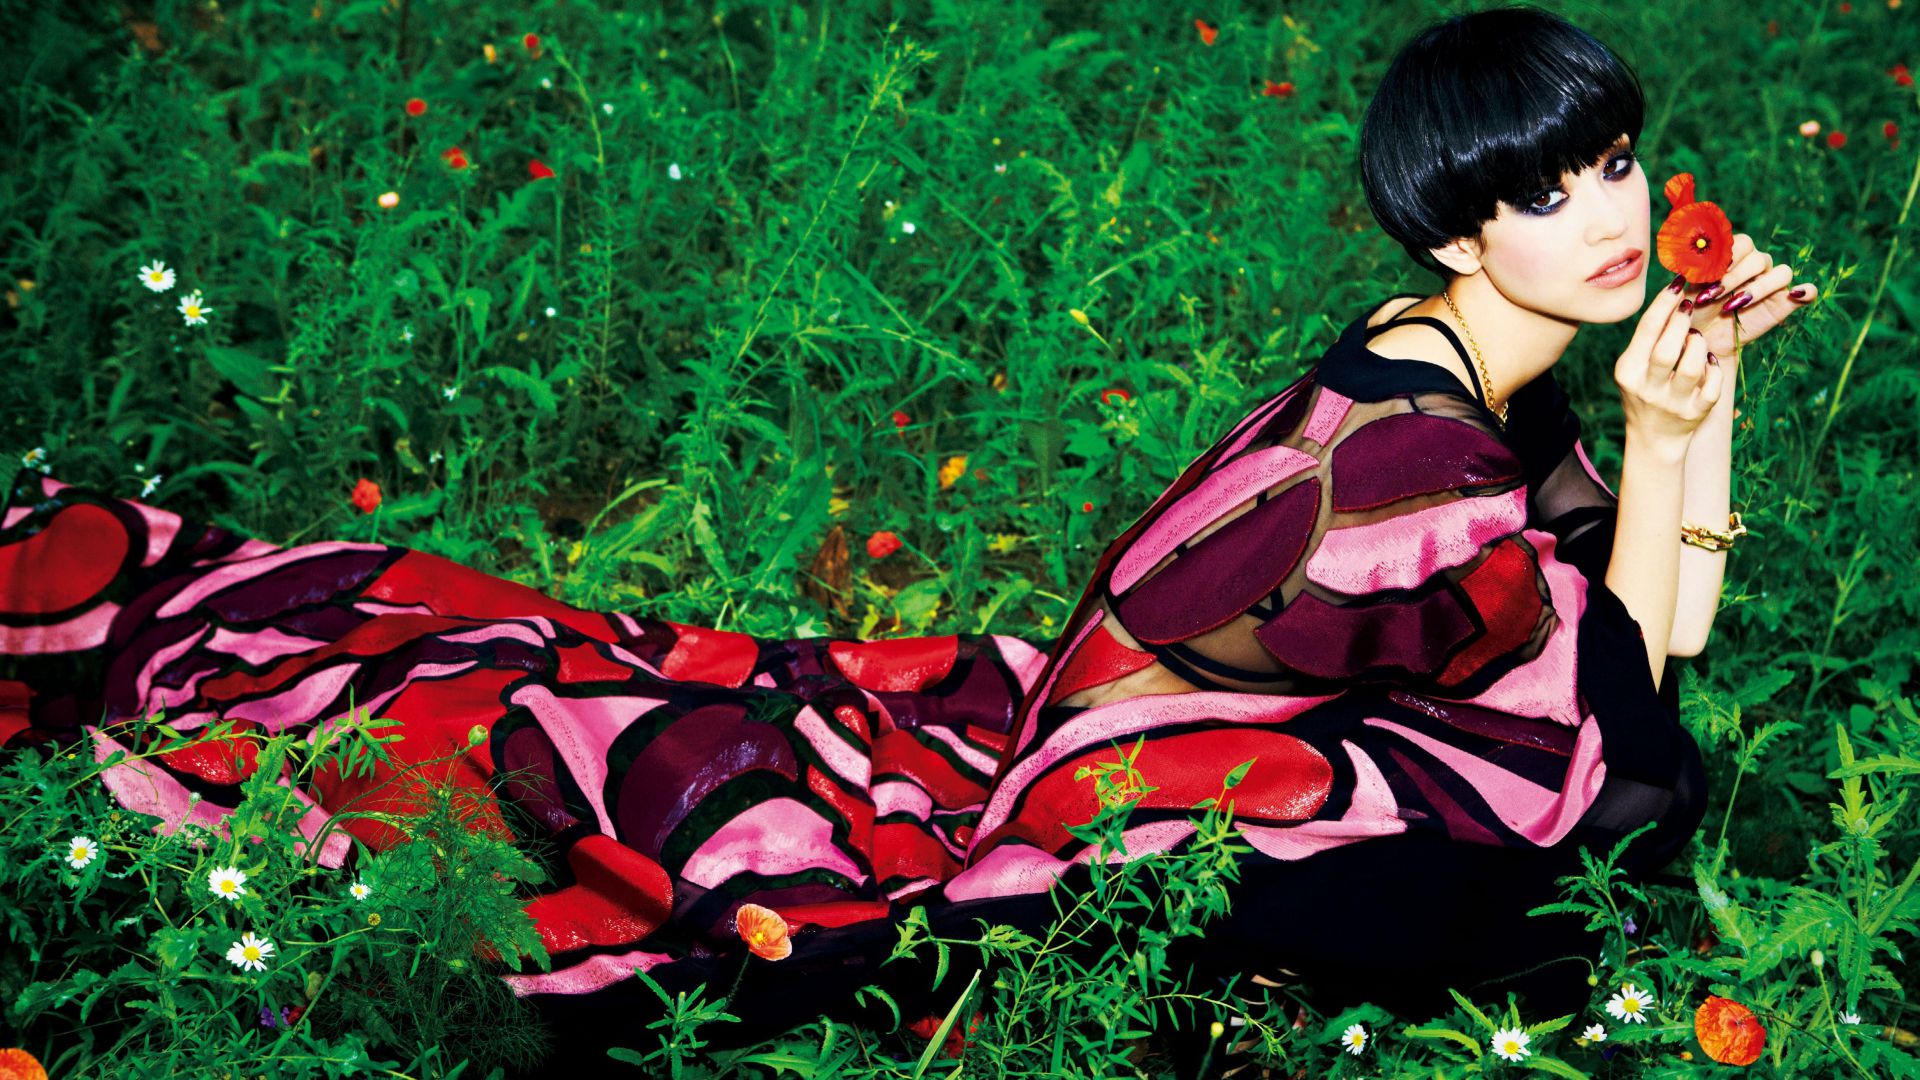 Кико Мидзухара, Самые популярные знаменитости, актриса, модель, Kiko Mizuhara, Most Popular Celebs, actress, model (horizontal)